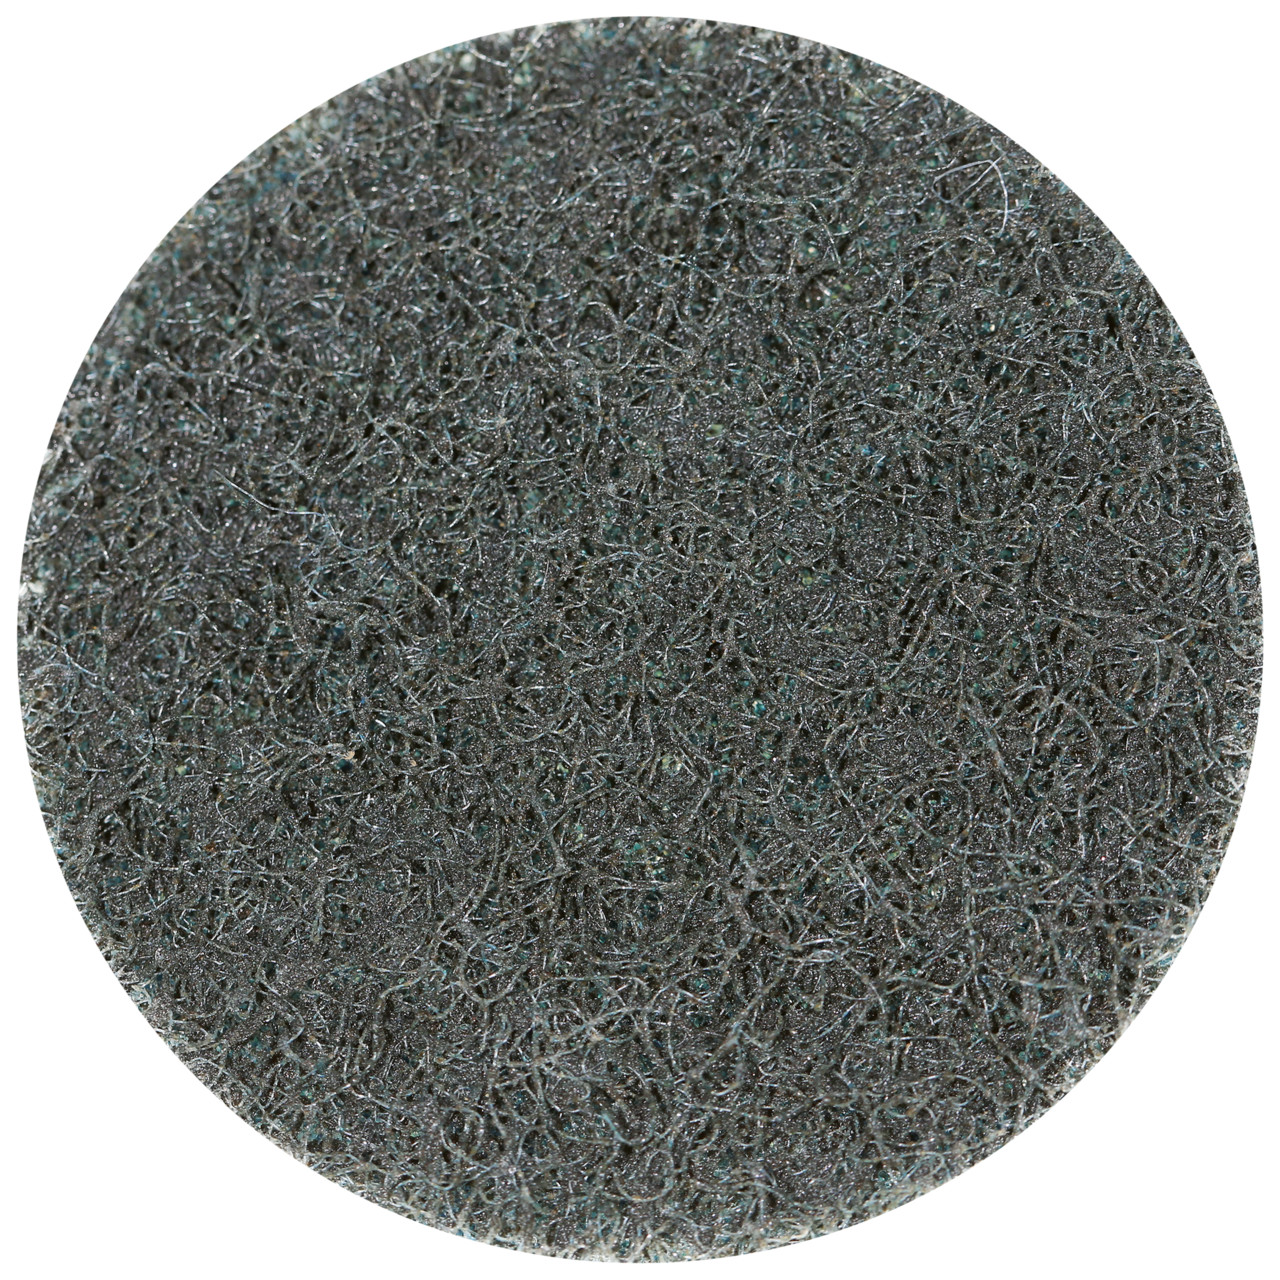 Tyrolit SCM QUICK CHANGE DISC Dimension 75xS Pour l'acier, l'acier inoxydable, les métaux non ferreux, le plastique et le bois, GROB, Forme : QDISC, art. 112592